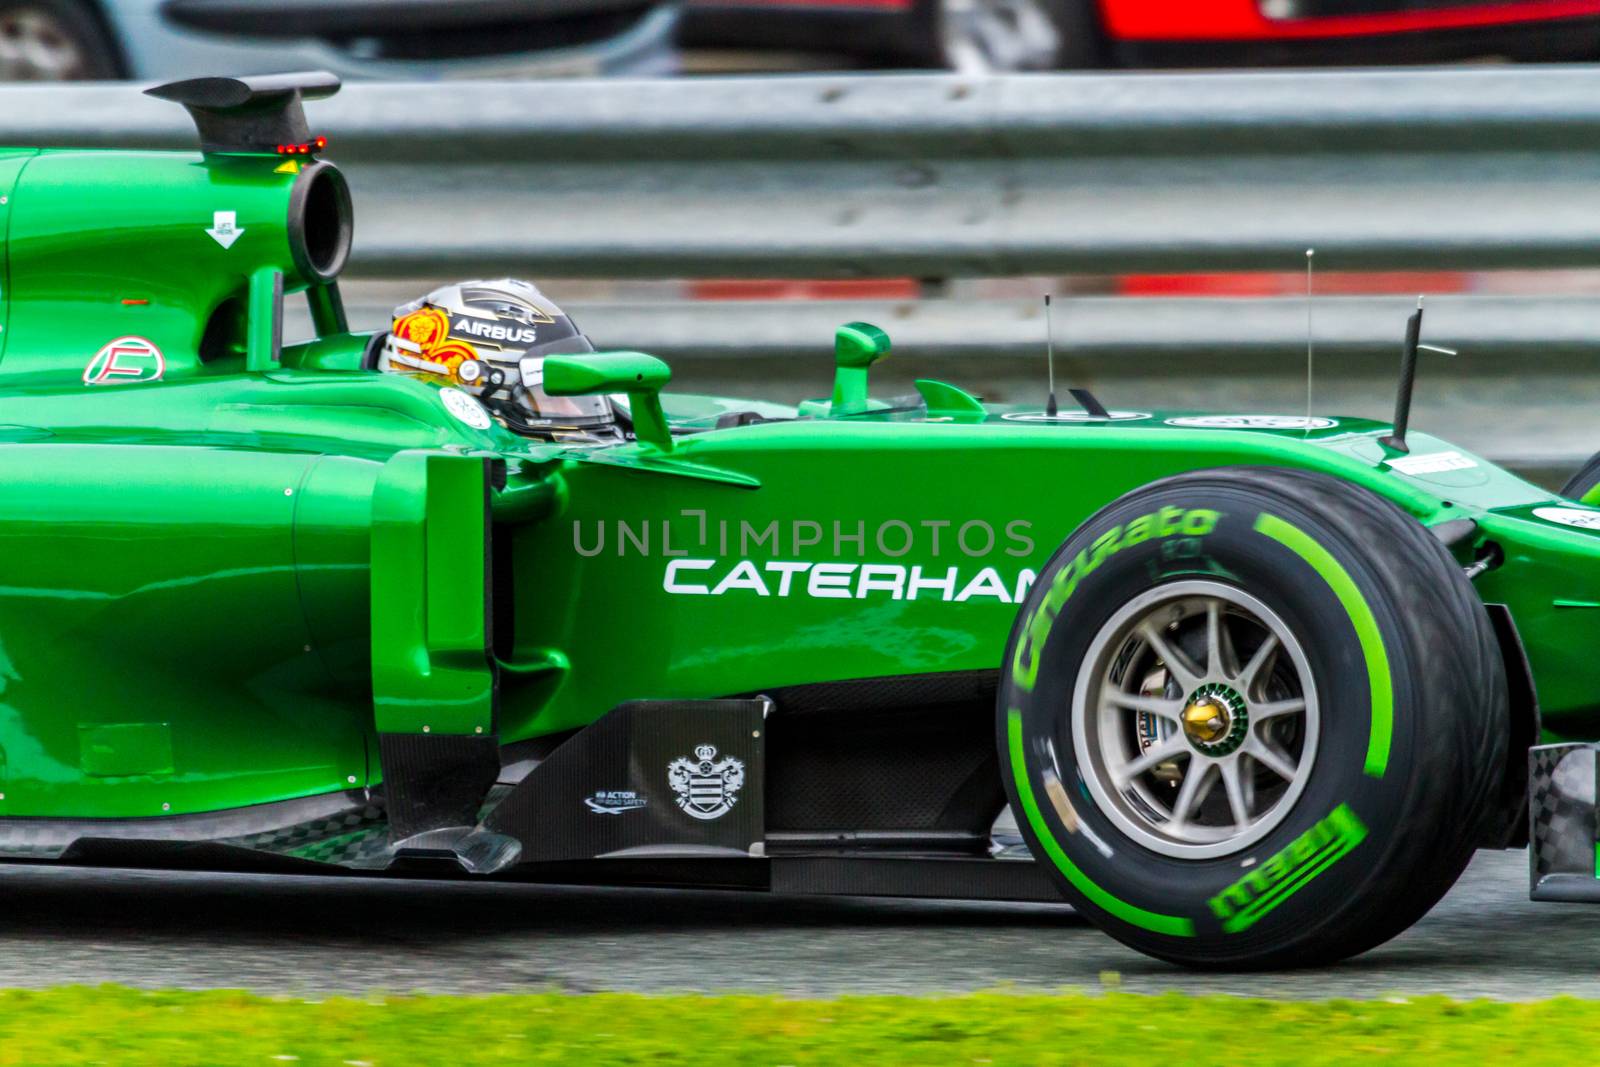 Team Caterham F1, Kamui Kobayashi, 2014 by viledevil